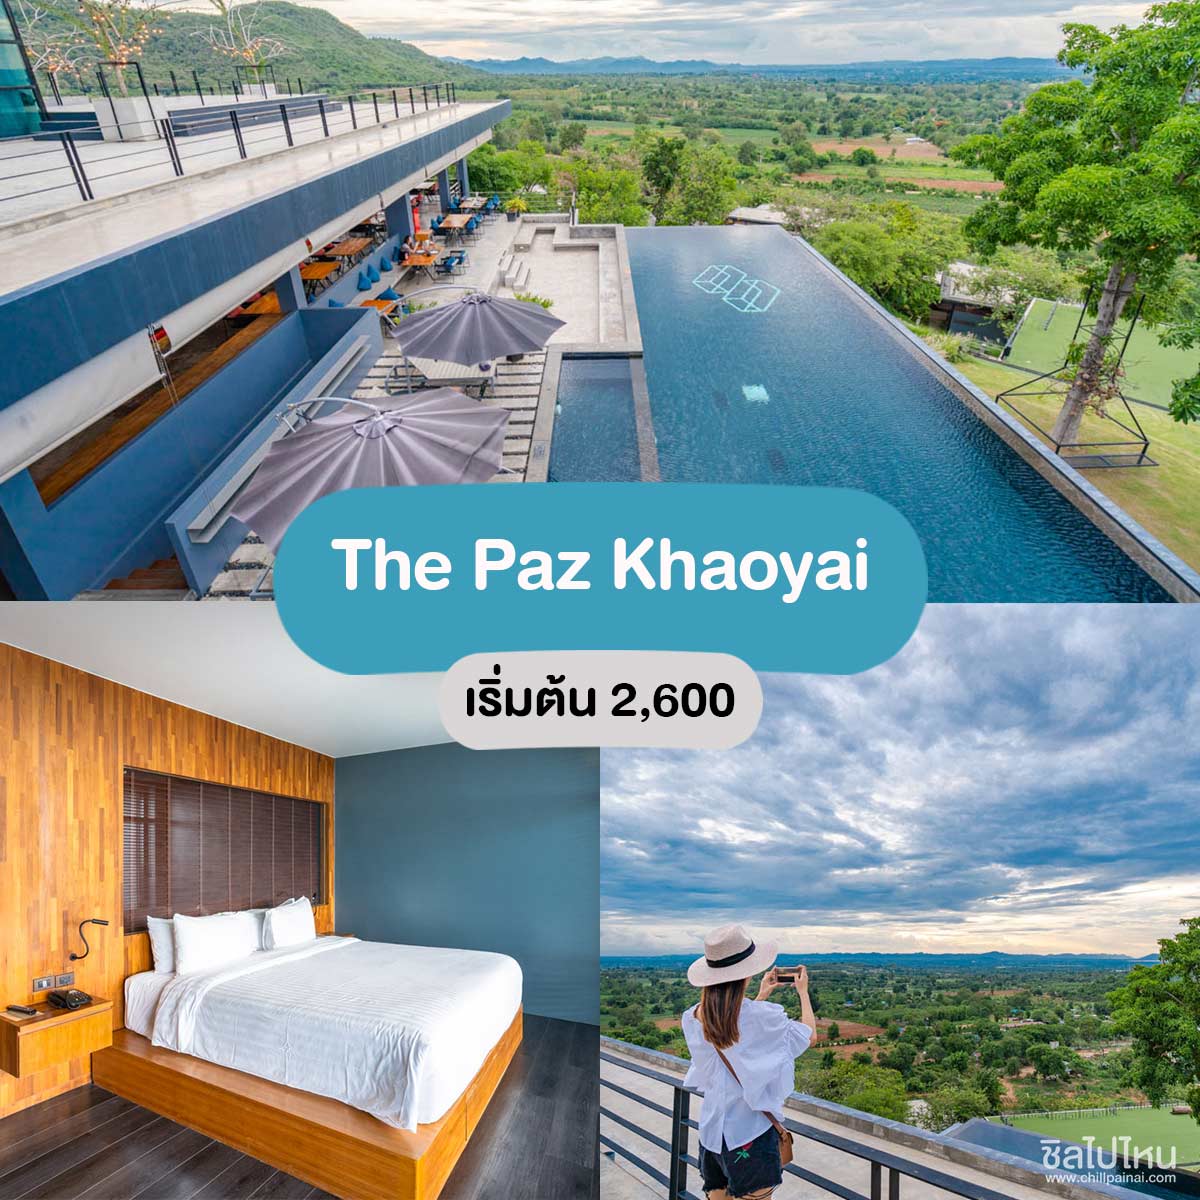 The Paz Khaoyai